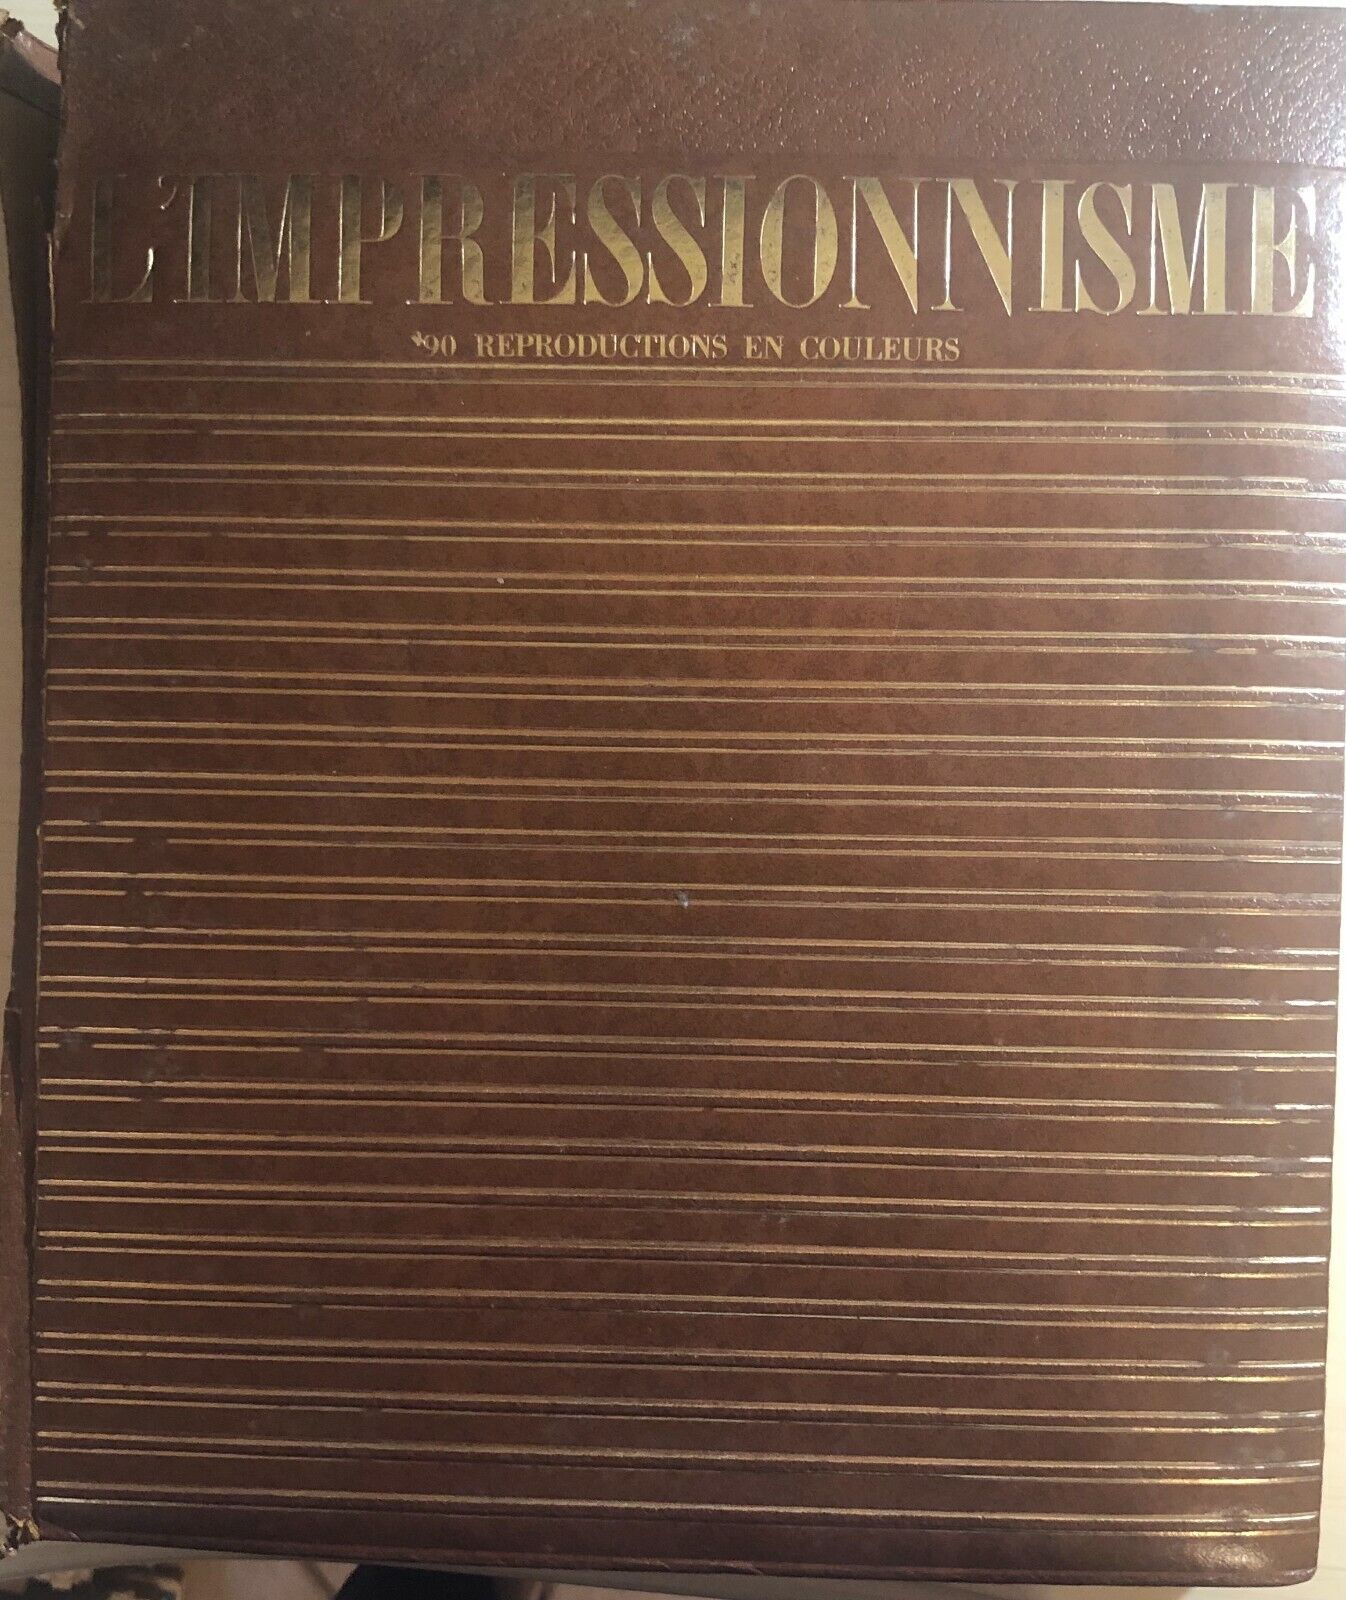 L'impressionisme au Mus?e de L'Ermitage di Aa.vv.,  1970,  Artia Prague